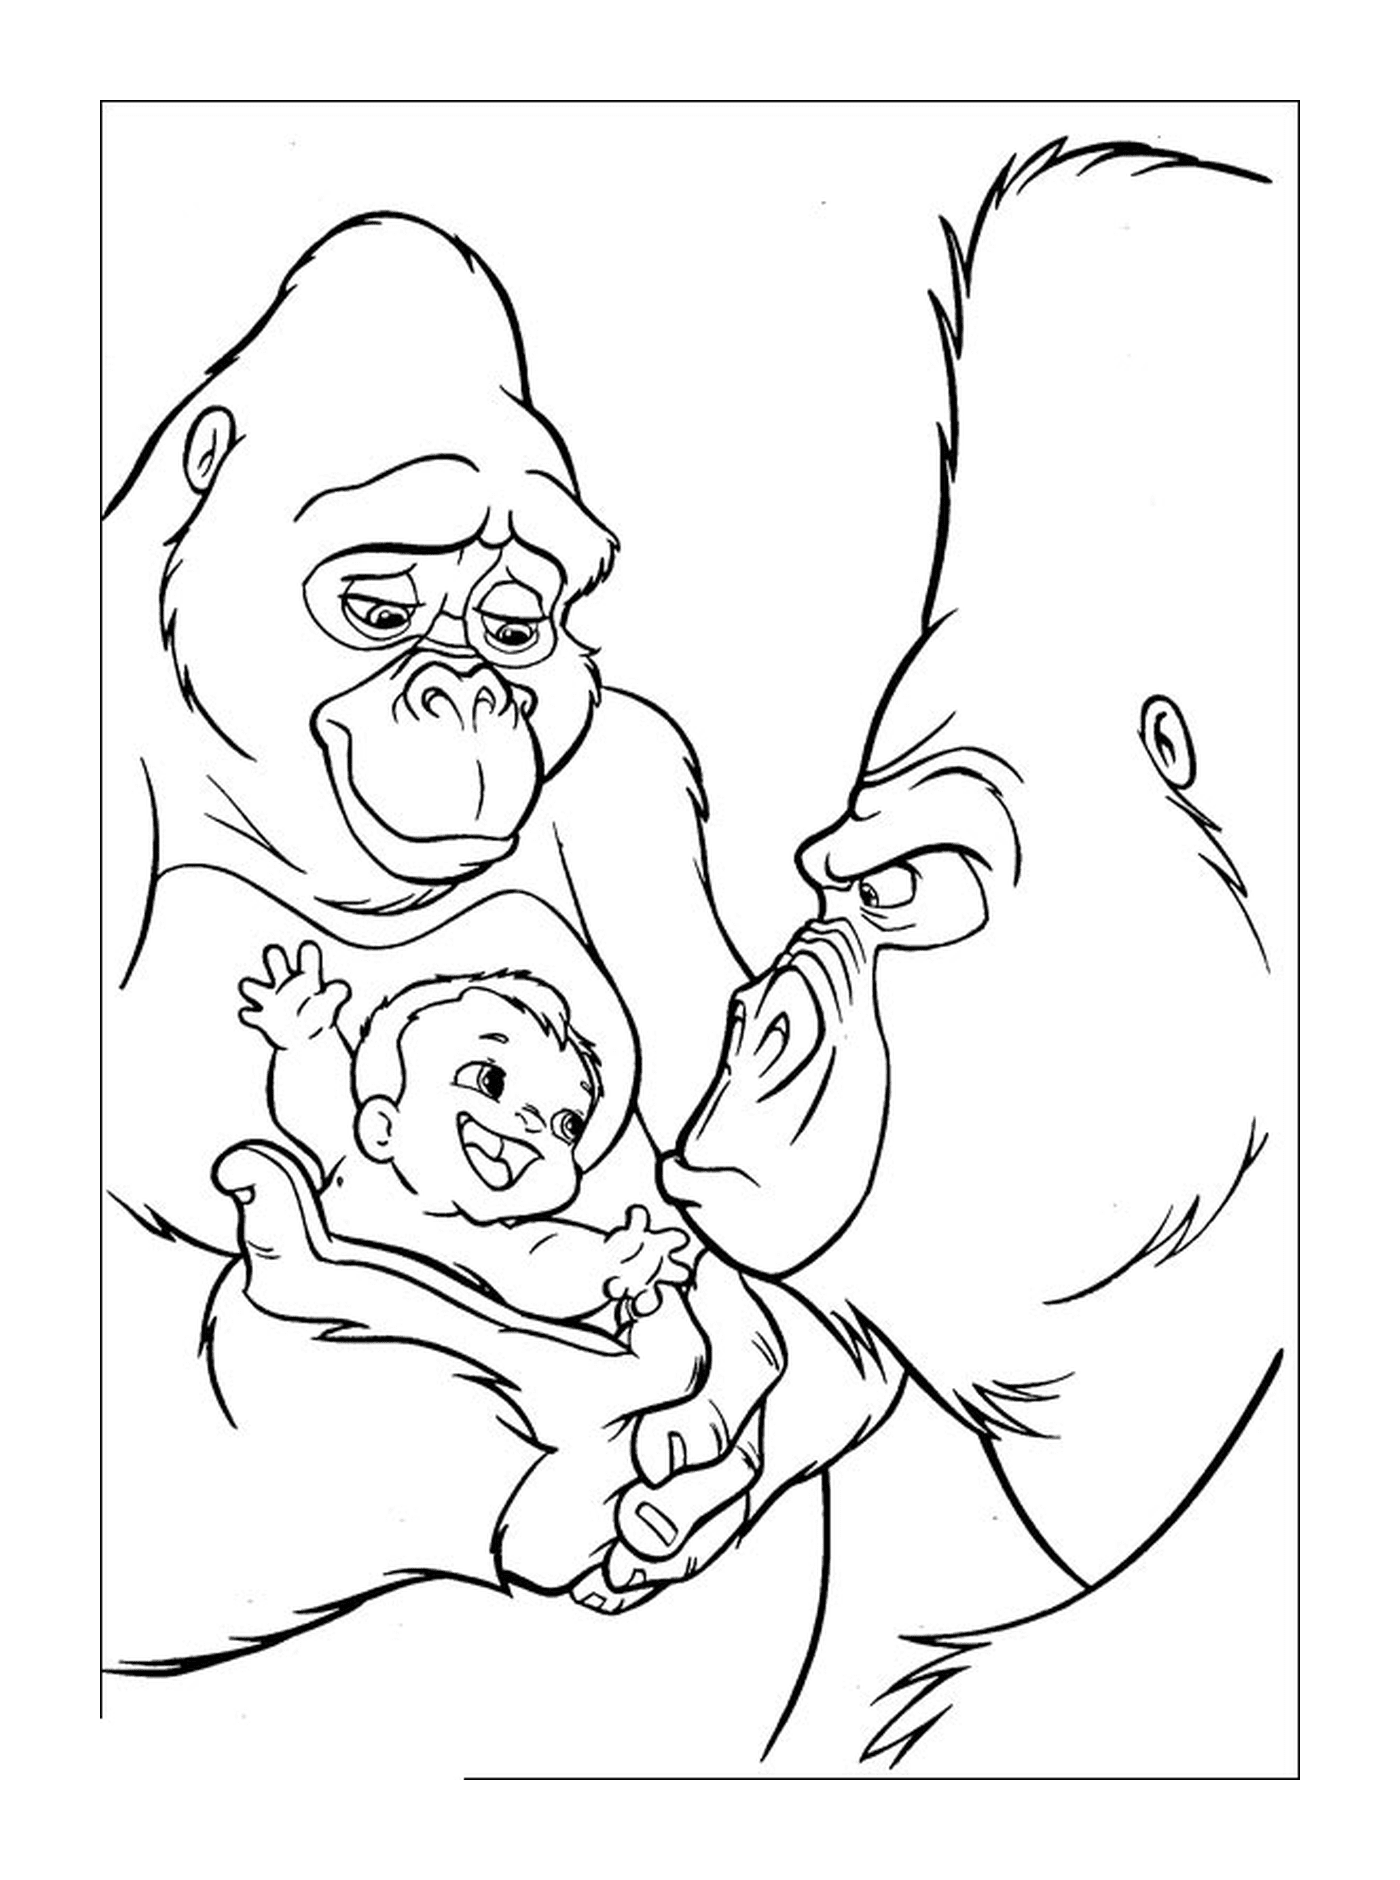  成年大猩猩和大猩猩宝宝和大猩猩宝宝 